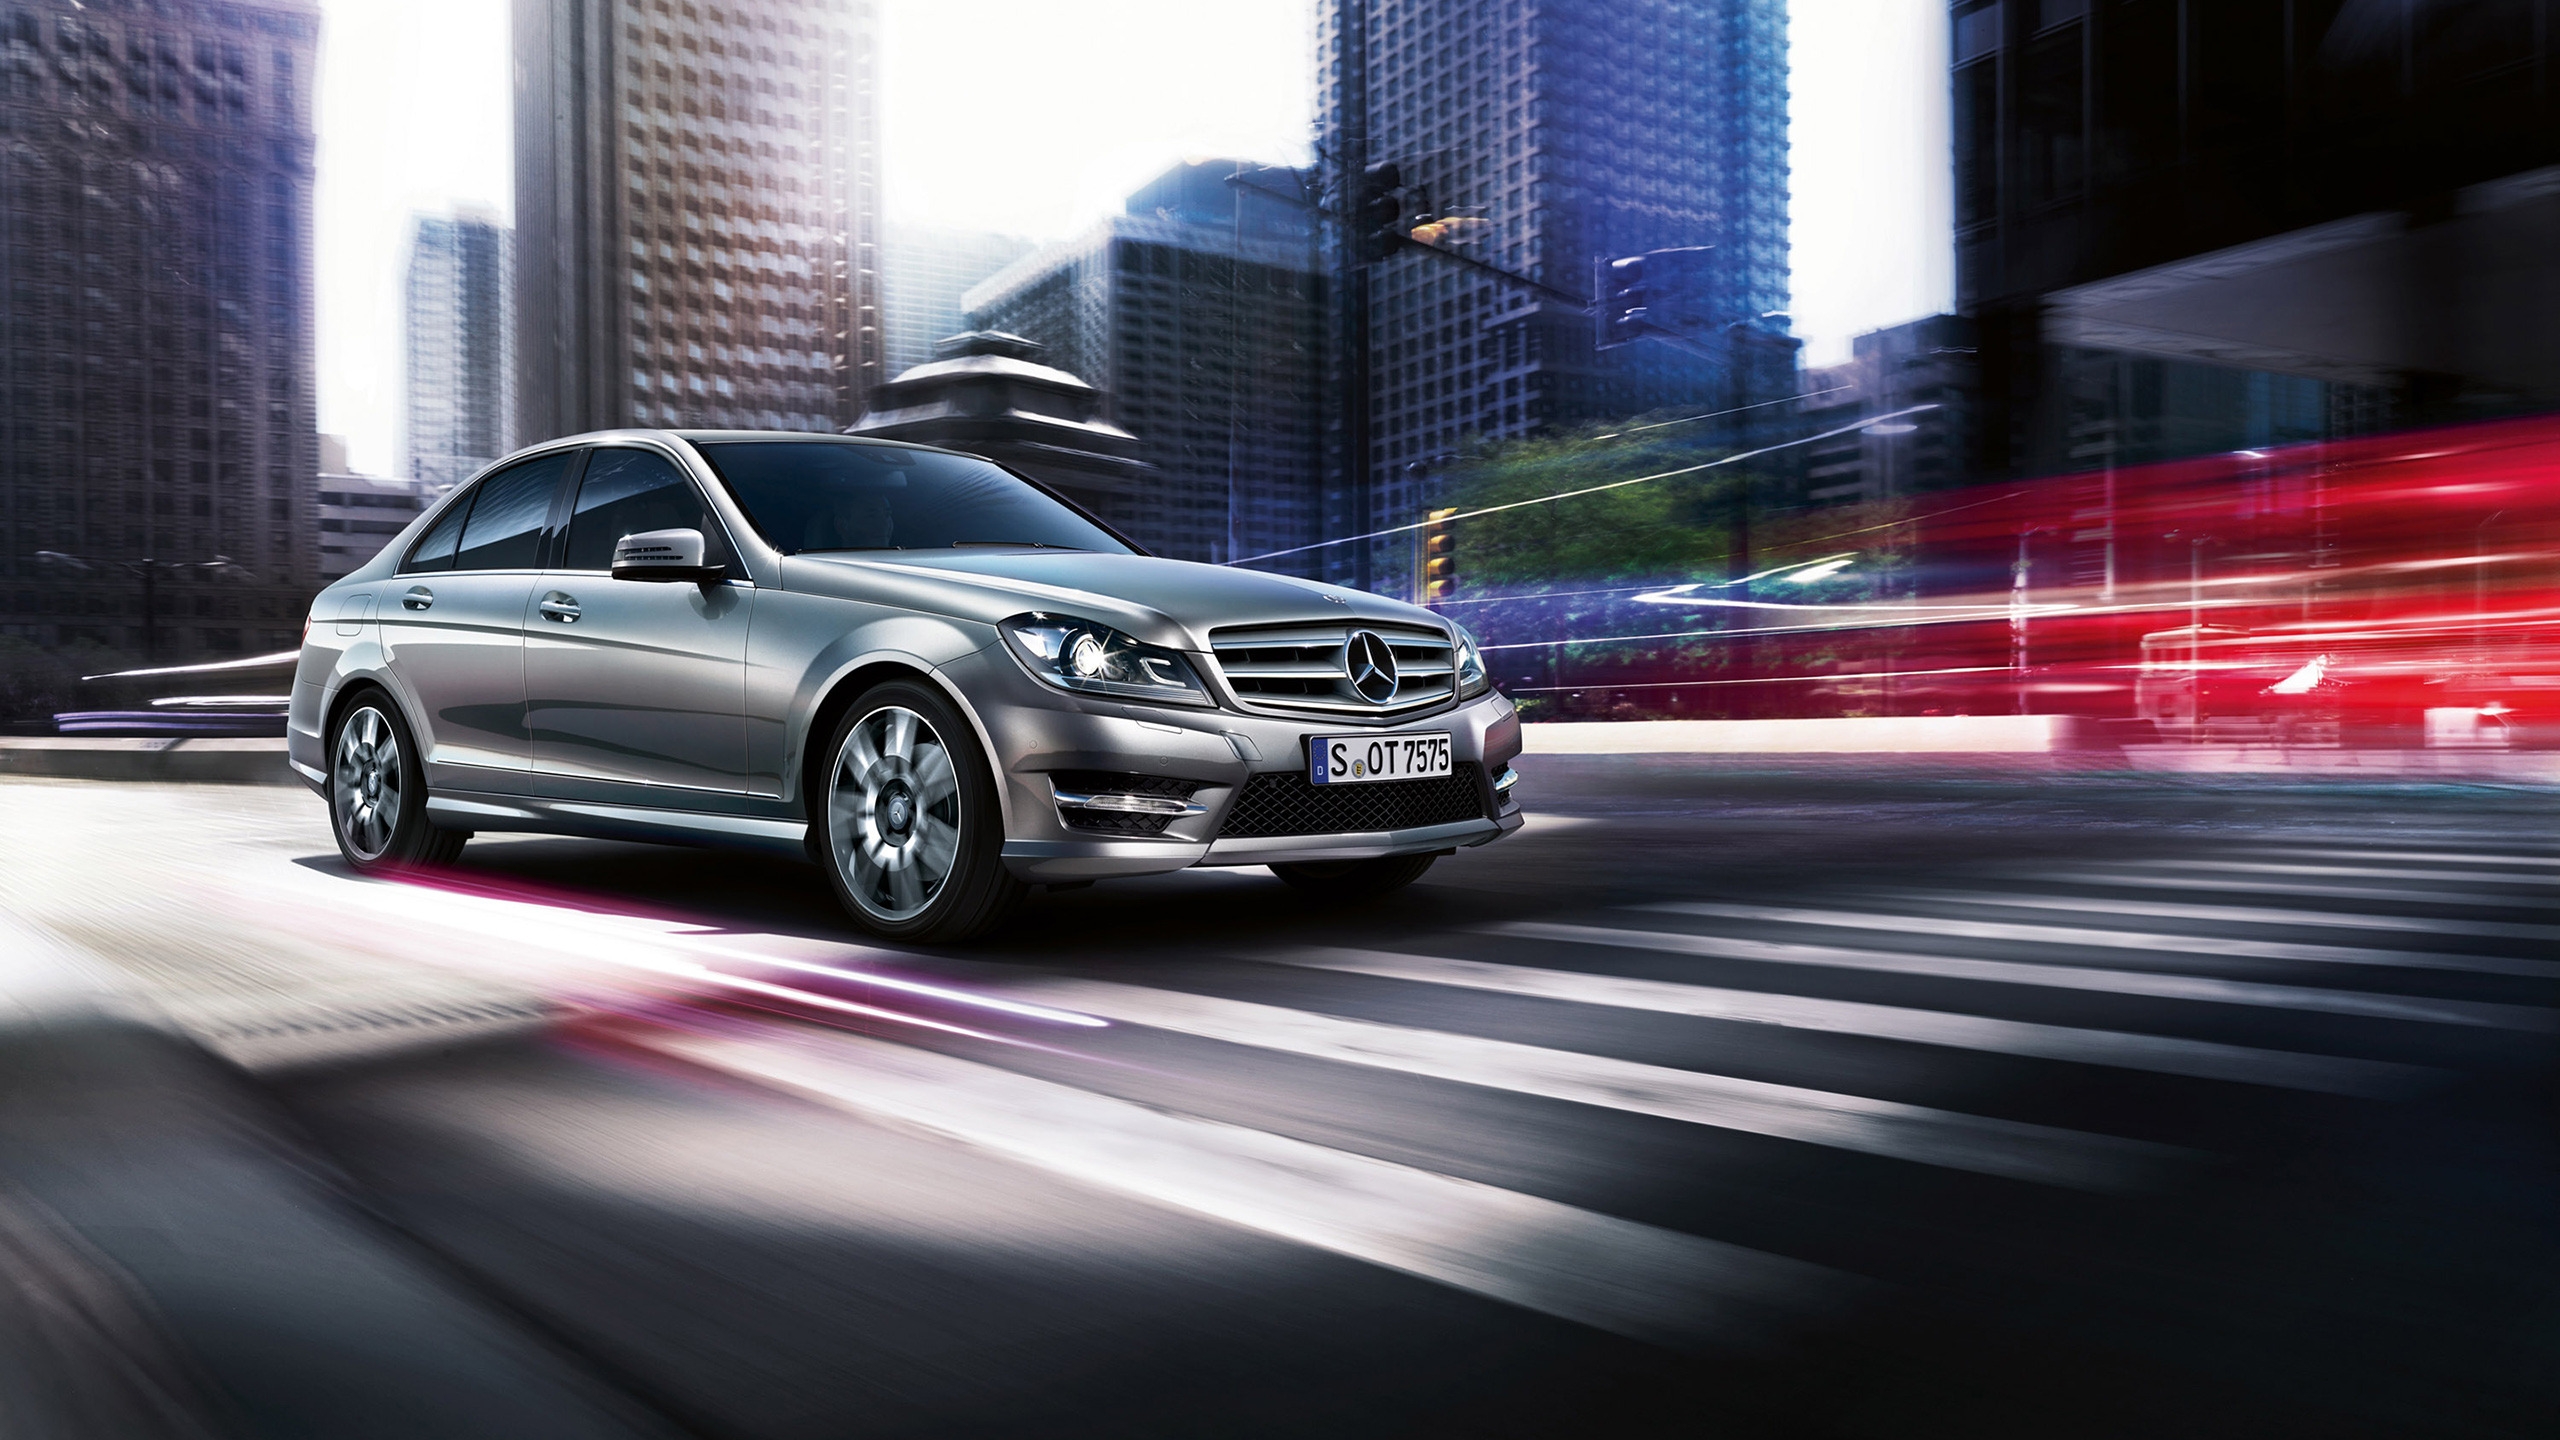 2013 Mercedes-Benz C Class for 2560x1440 HDTV resolution